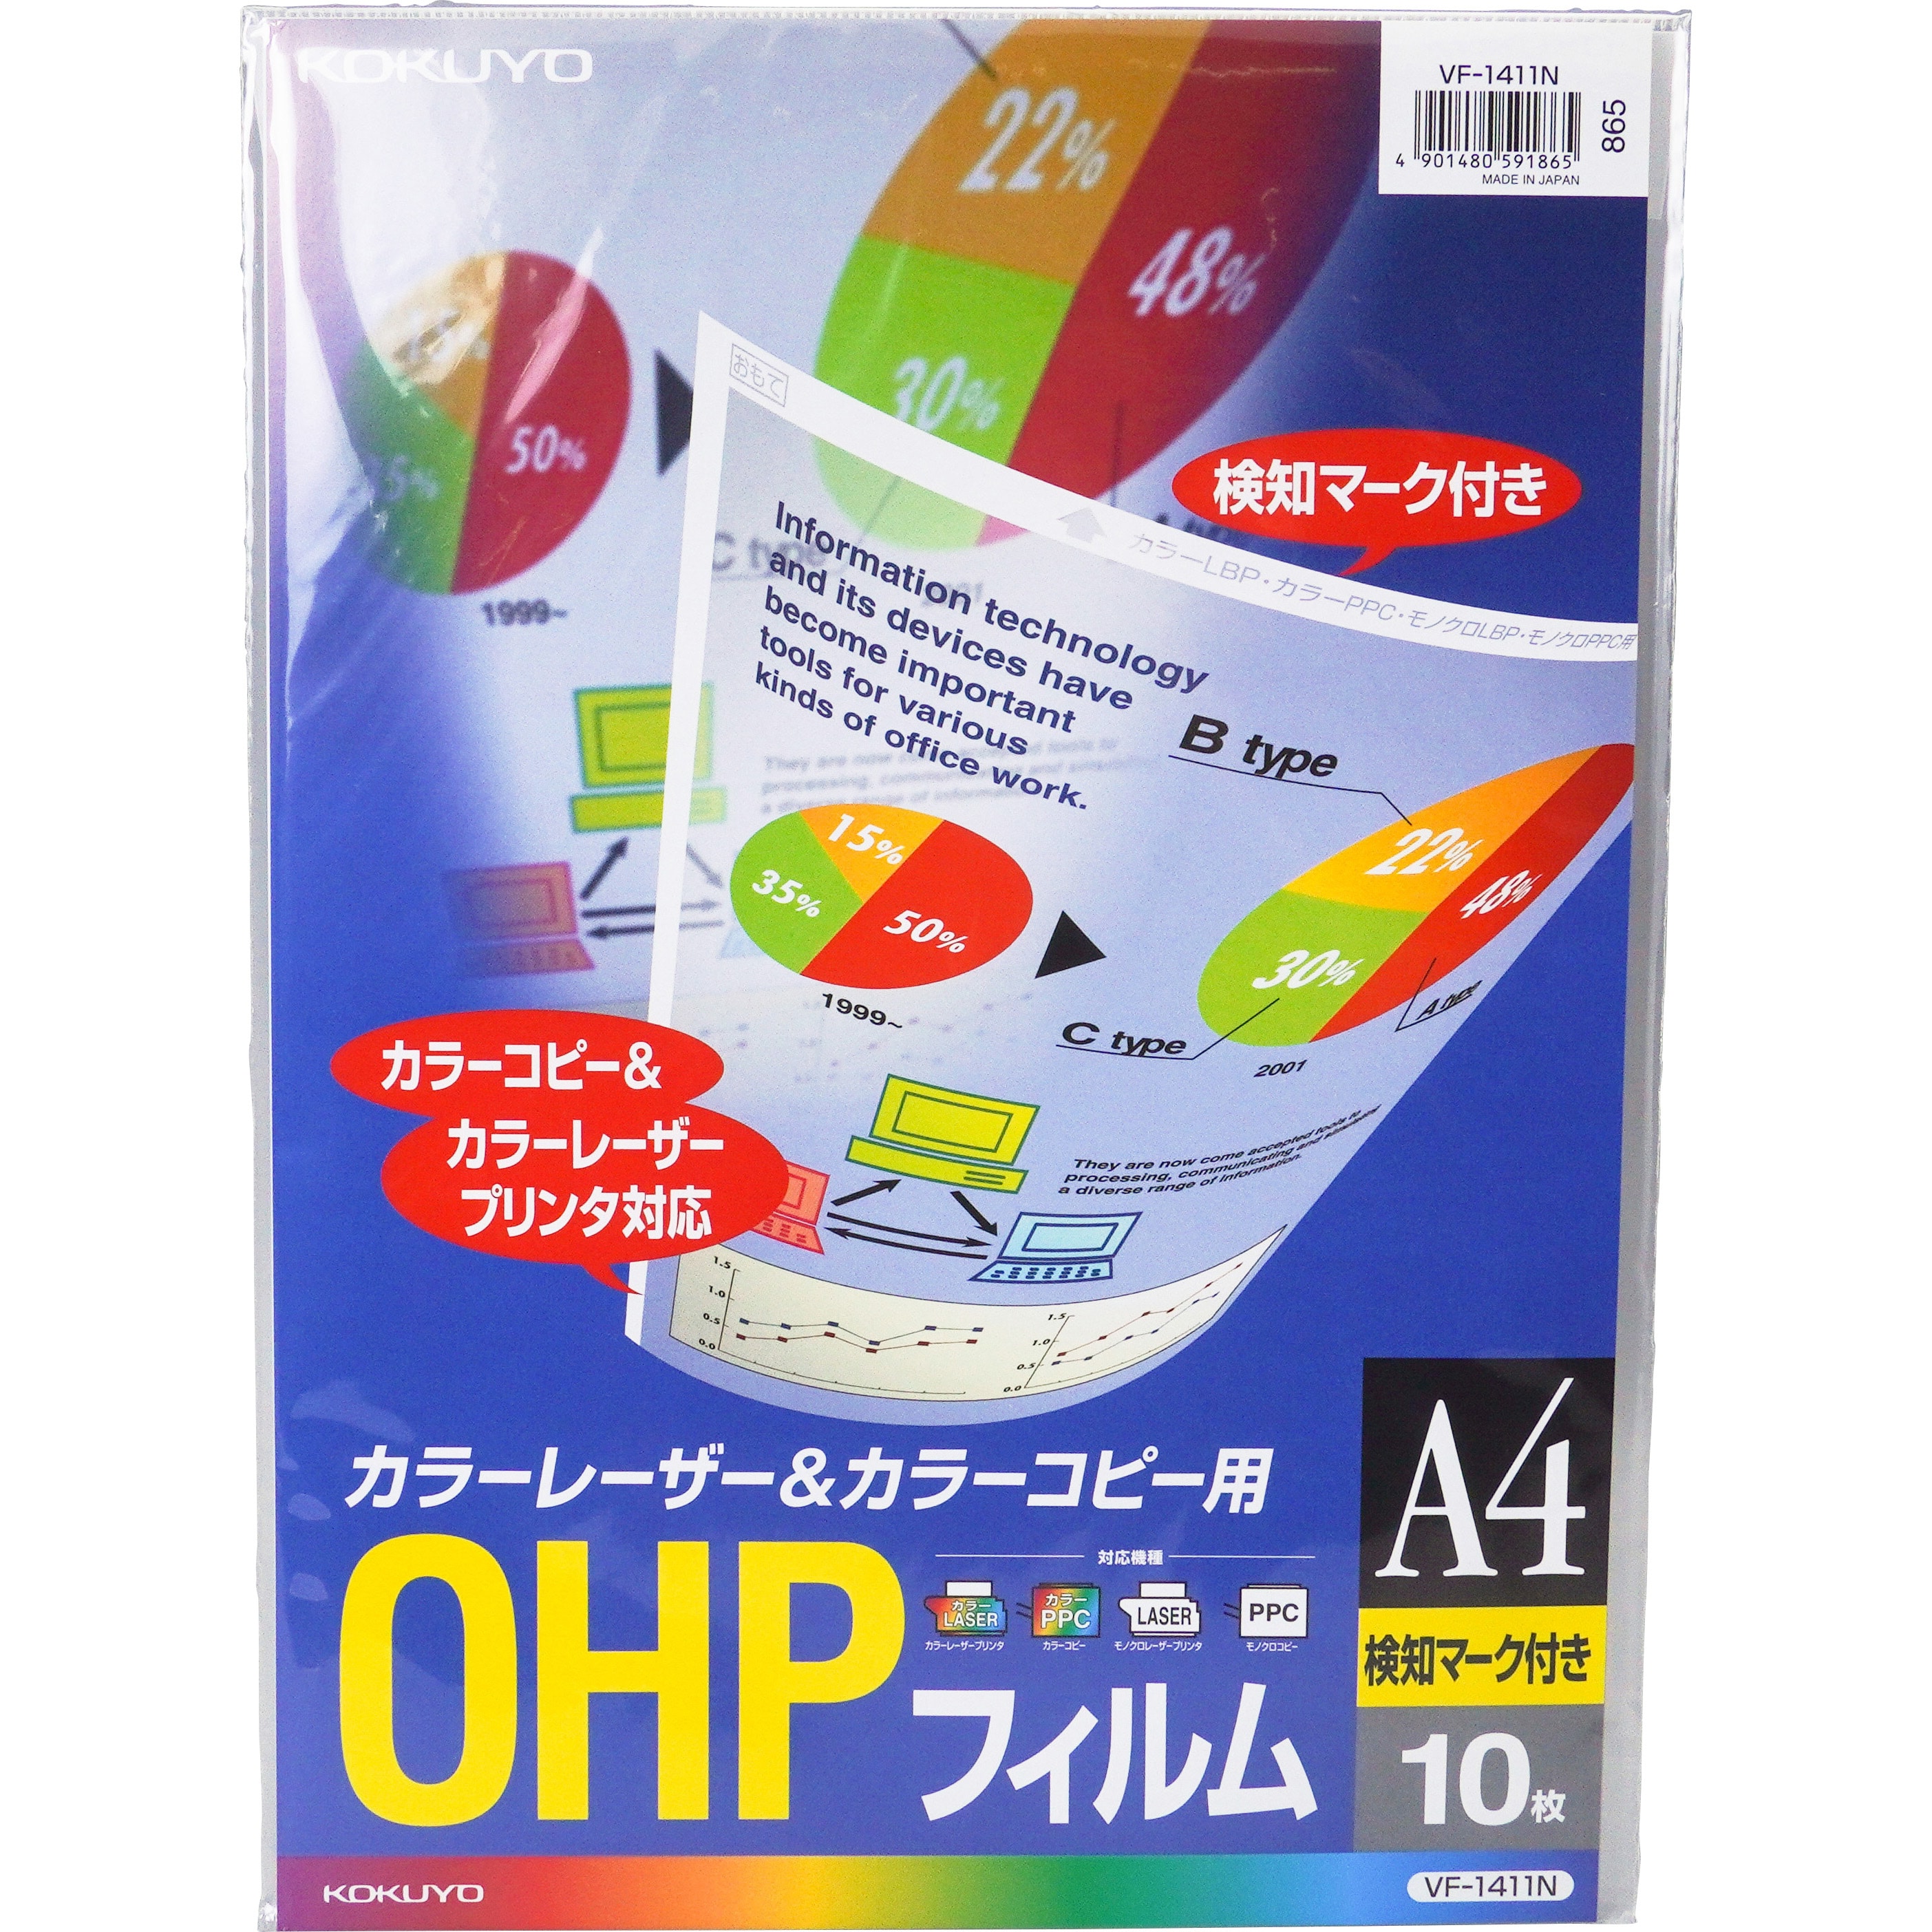 コクヨ OHPフィルム インクジェットプリンタ用 A4 10枚 VF-1101N まとめ買い3冊セット - 4